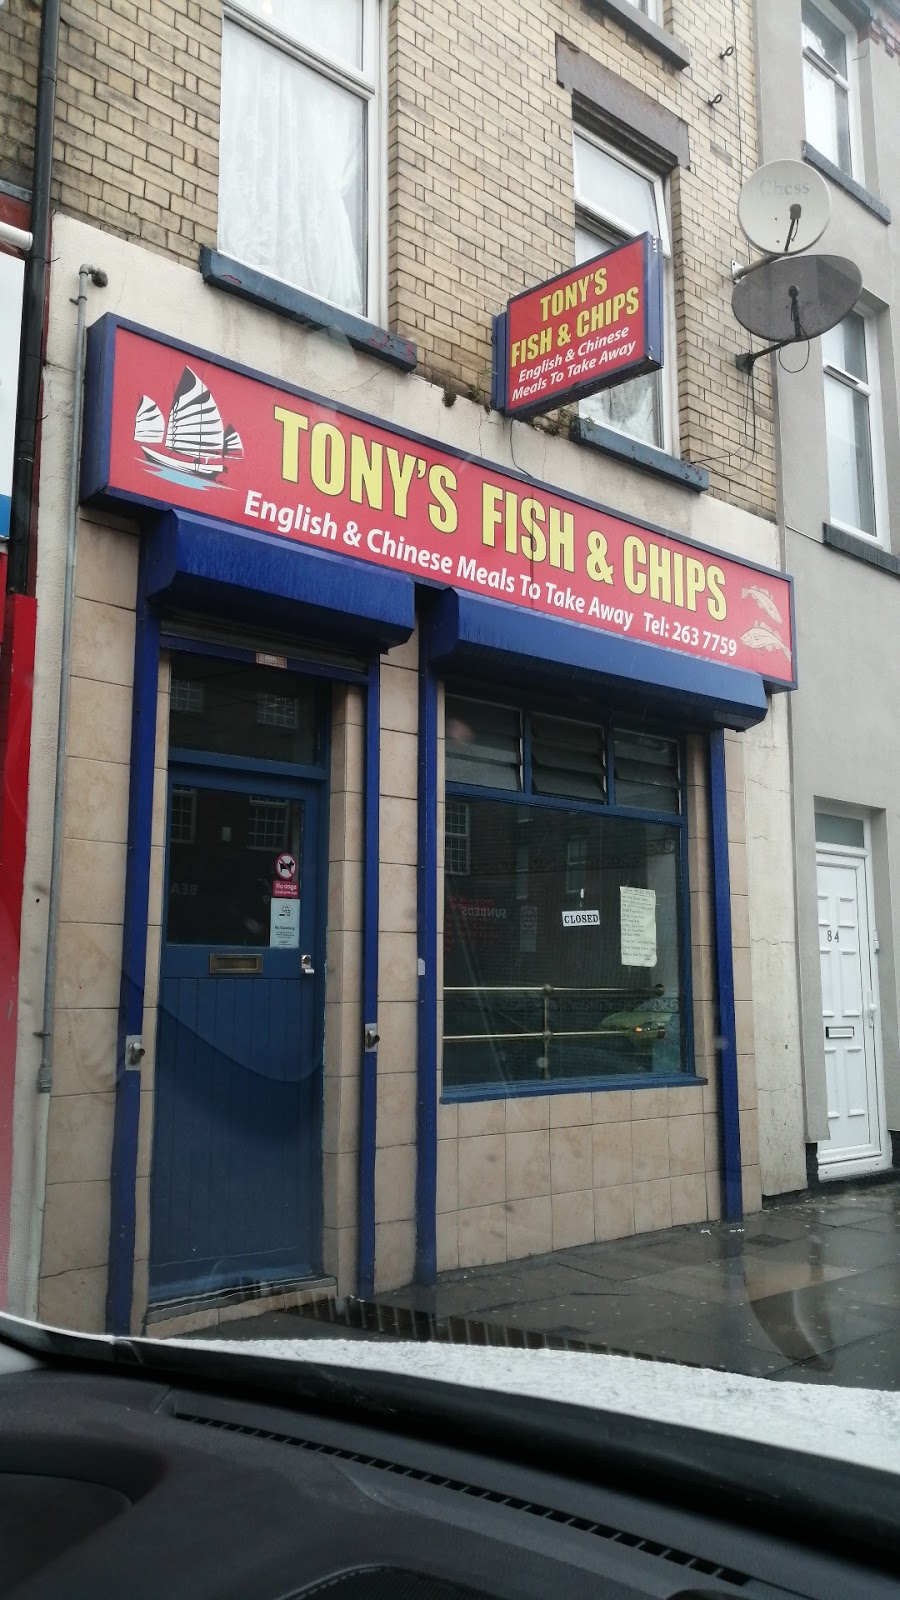 Tony’s Fish & Chips